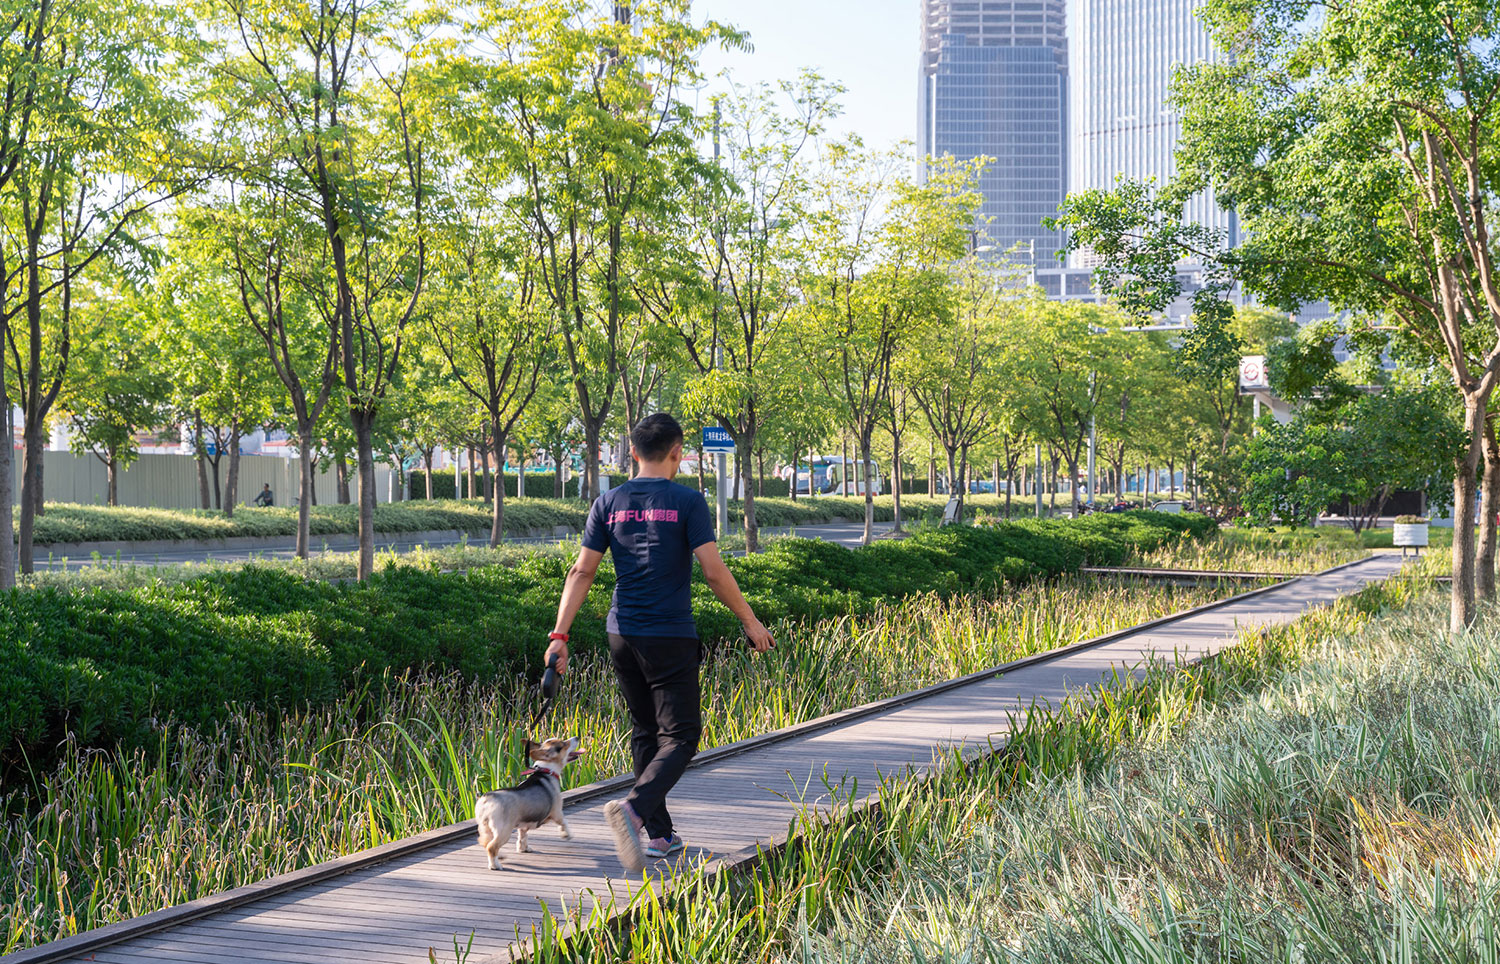 Modern Landscape Design for Public Parks